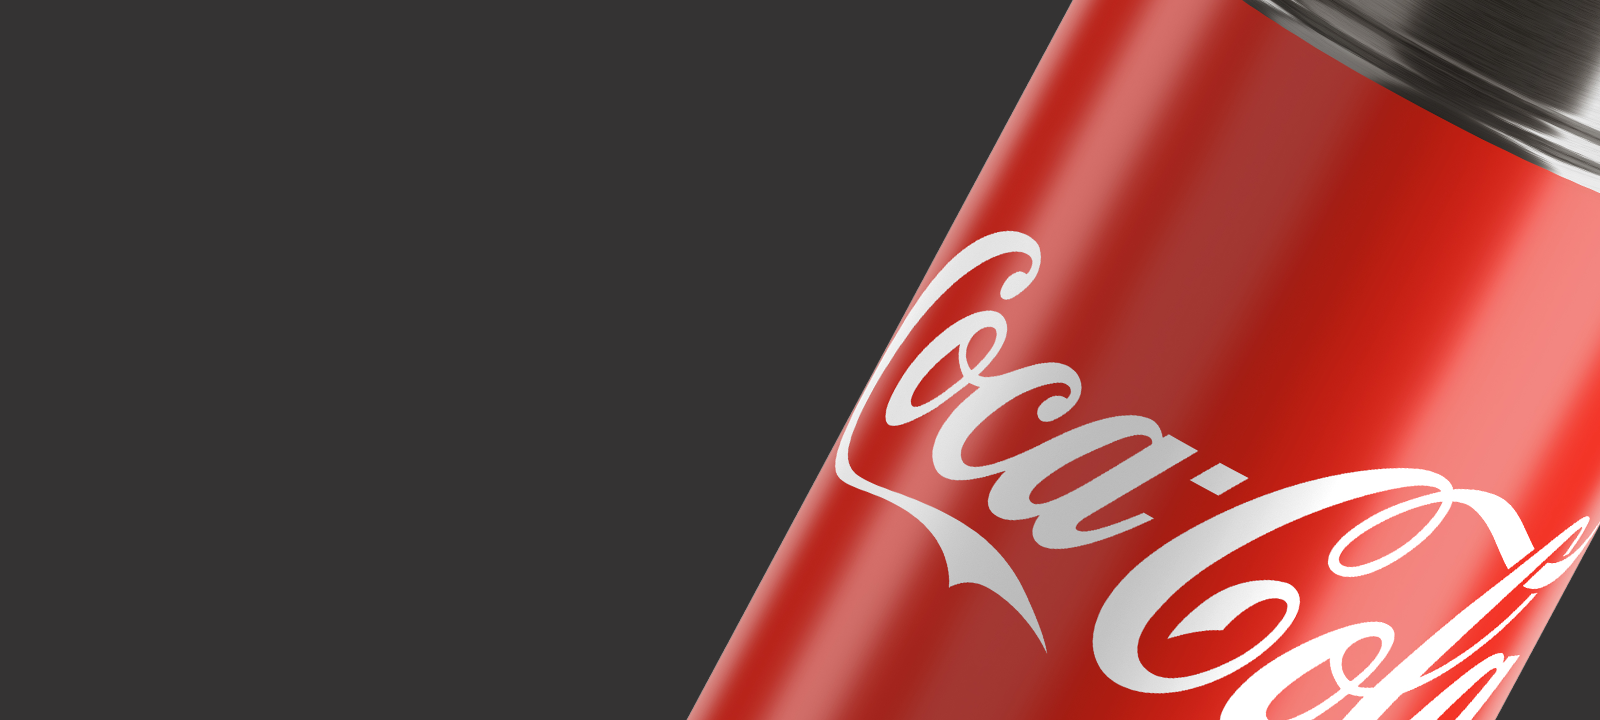 Mia Coca Cola: Borracce Coca-Cola - Elite